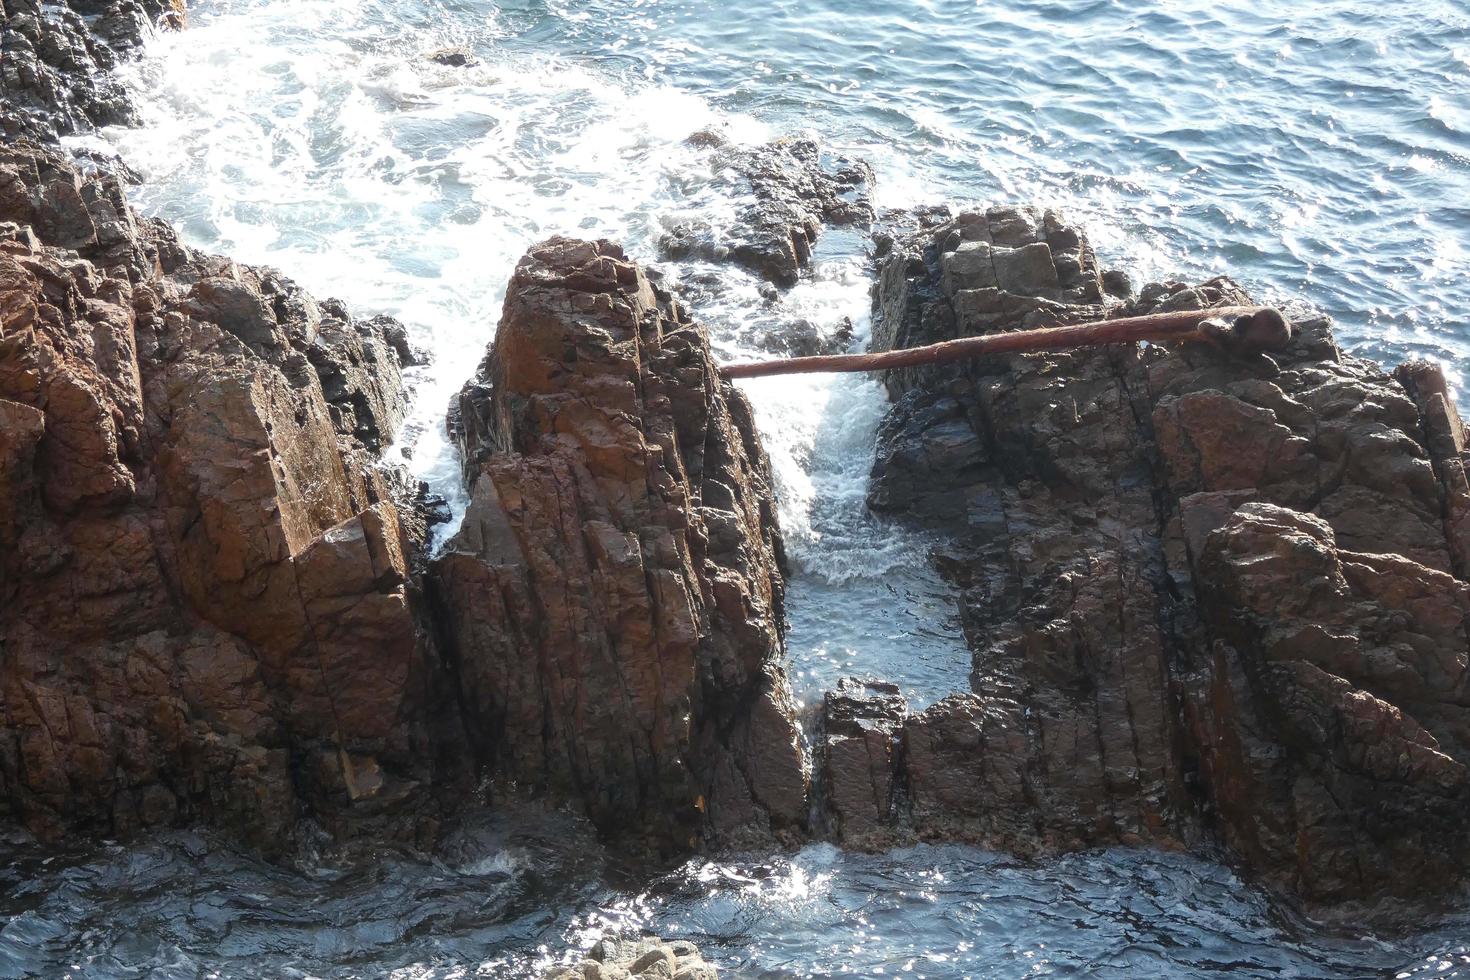 rocas y mar en la costa brava catalana, mar mediterráneo, mar azul foto